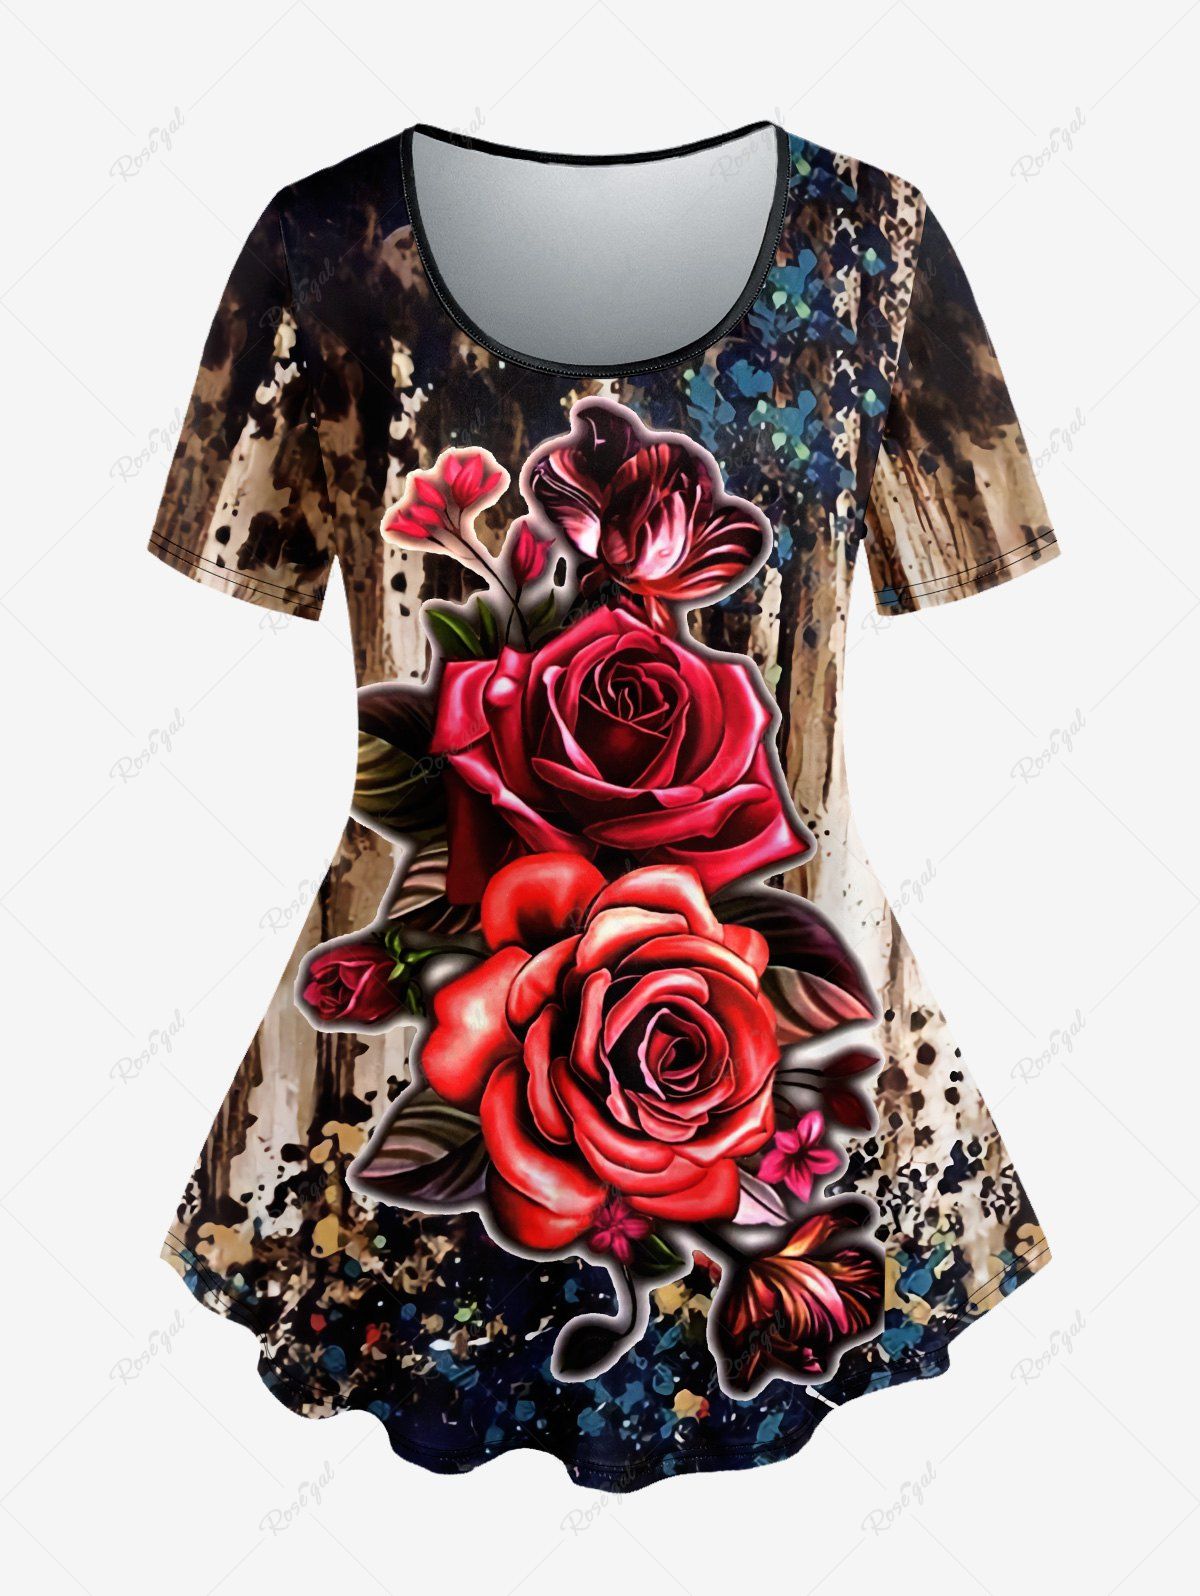 Sale Plus Size Tie Dye Colorblock Rose Floral Print Short Sleeves T-shirt  